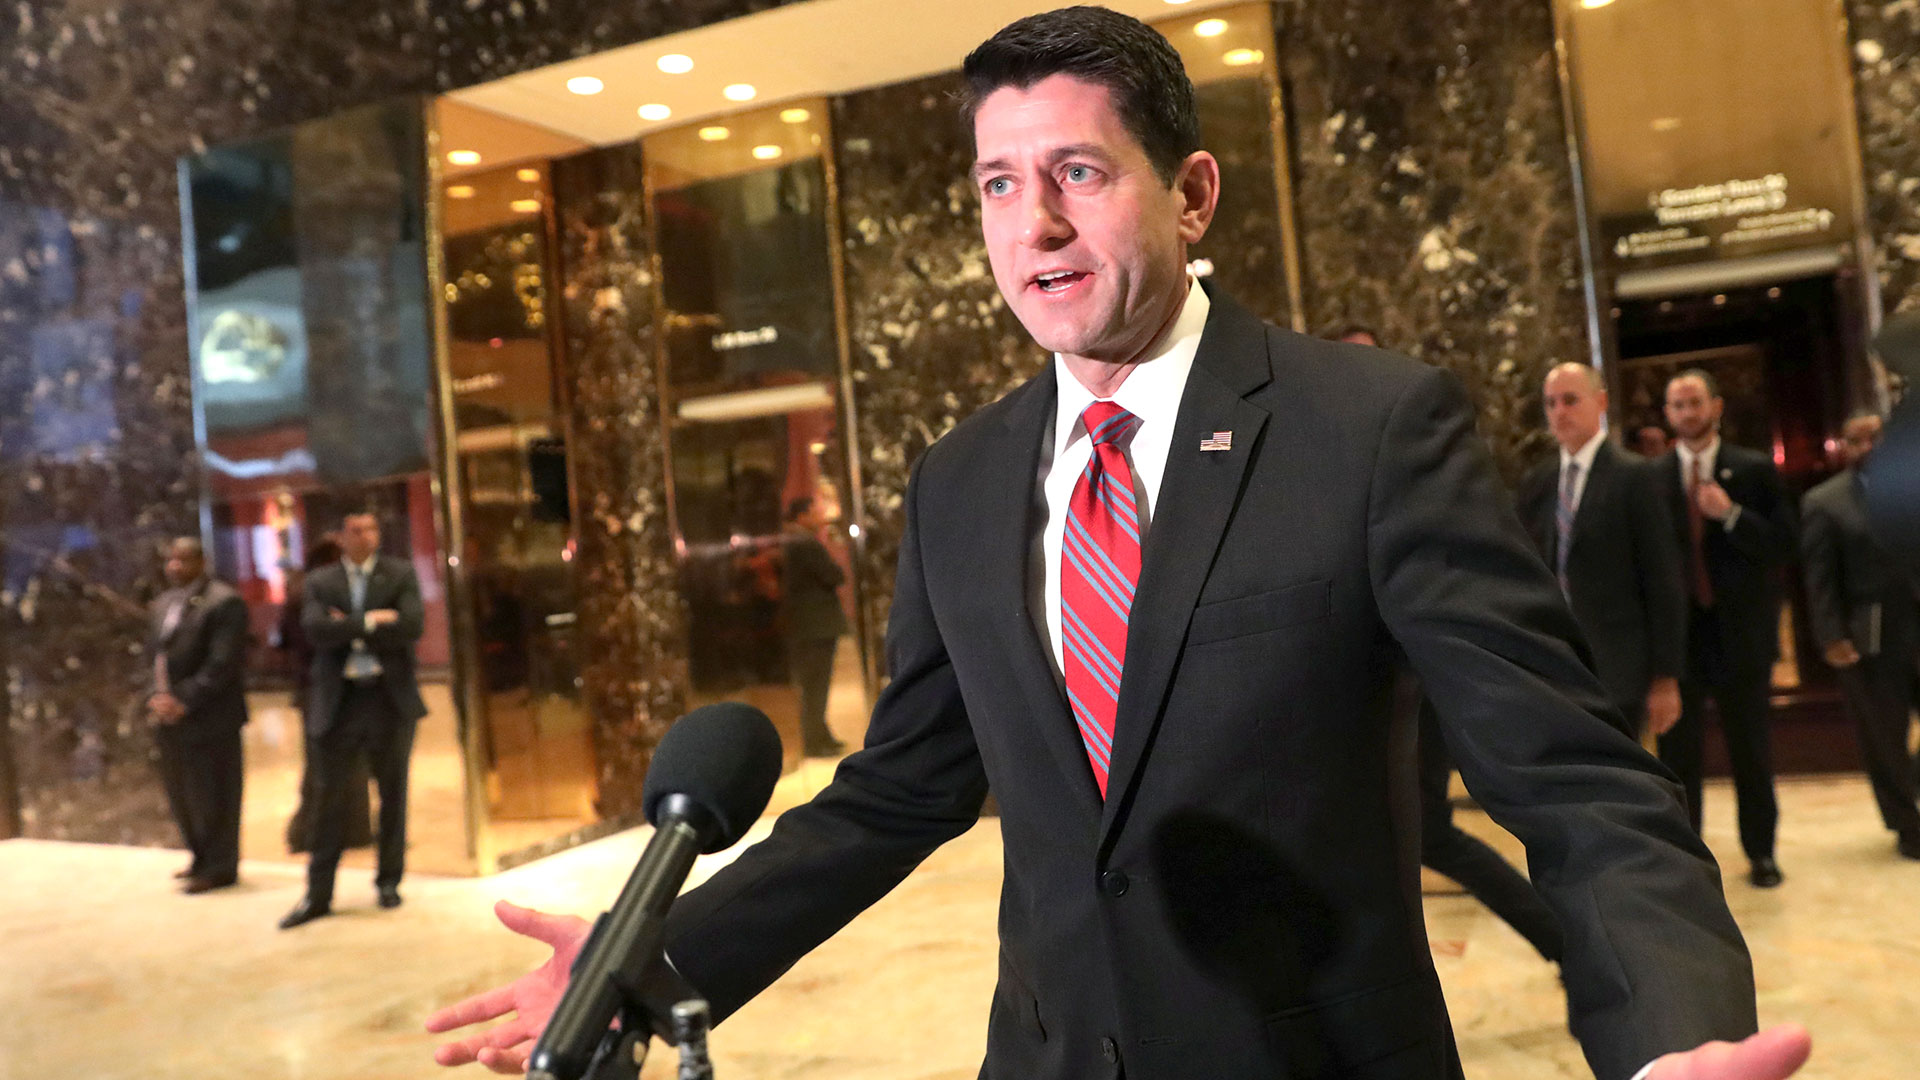 El ex presidente de la Cámara de Representantes, Paul Ryan, quien tuvo diferencias con Trump durante sus primeros dos años en el cargo, calificó a Trump como “un lastre” que dañaría las posibilidades del partido en 2024. (REUTERS)